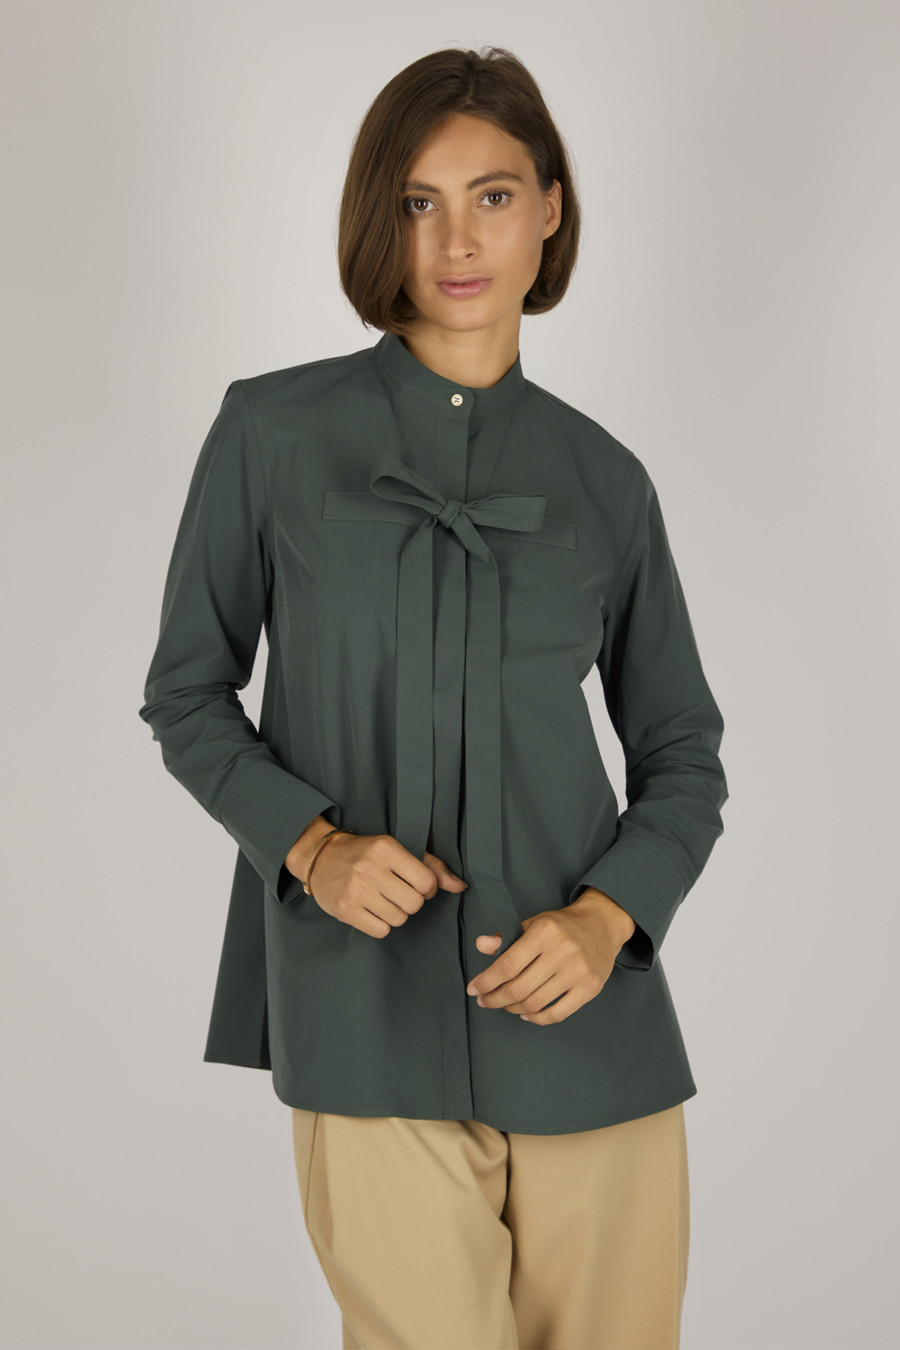 EVE – Bluse mit Stehkragen und Bindeelement – Farbe: Moss